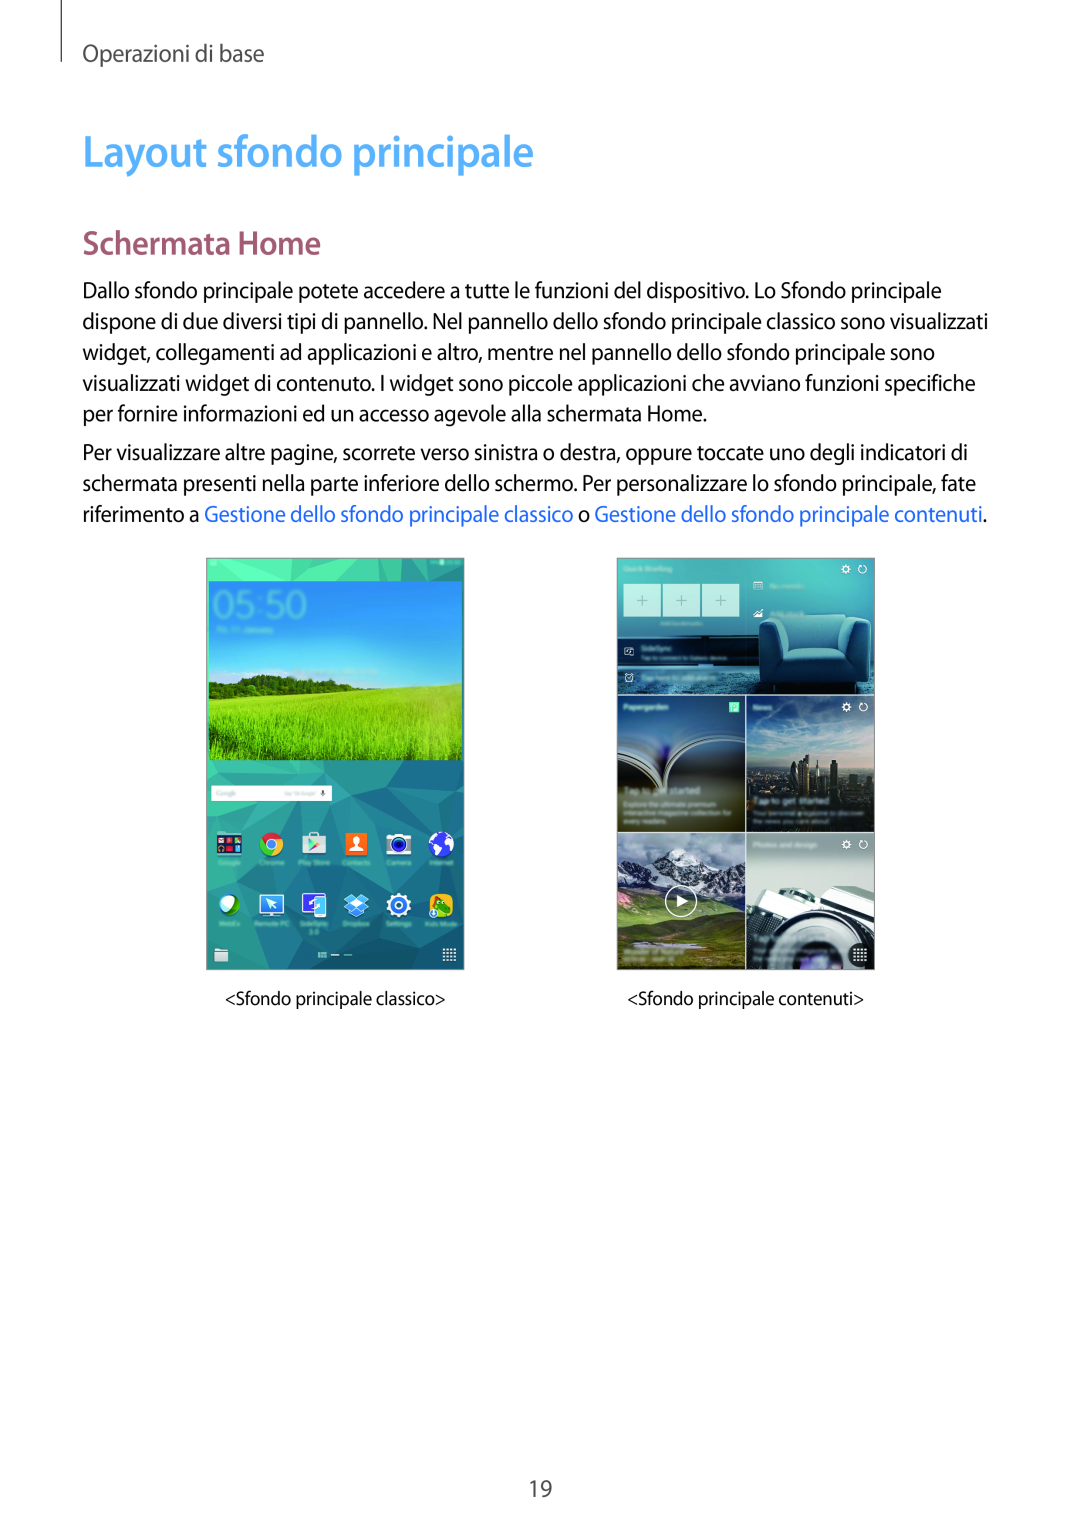 Samsung SM-T700NZWAITV, SM-T700NZWATUR, SM-T700NTSATUR manual Layout sfondo principale, Schermata Home, Operazioni di base 